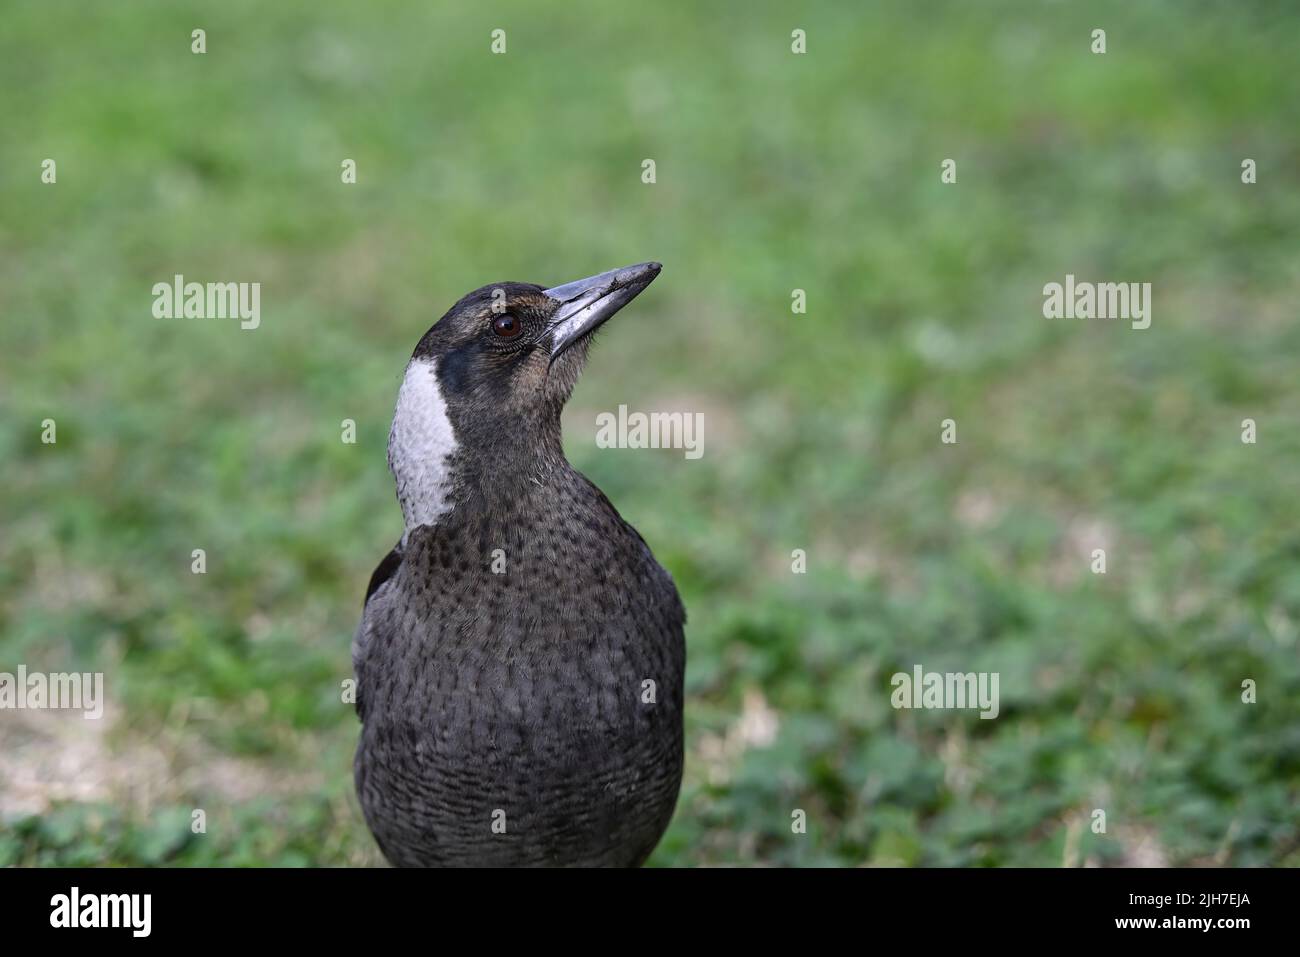 Nahaufnahme einer jungen australischen Elster mit dem Kopf nach links gedreht und nach oben geneigt, der Schnabel des Vogels leicht schmutzig Stockfoto